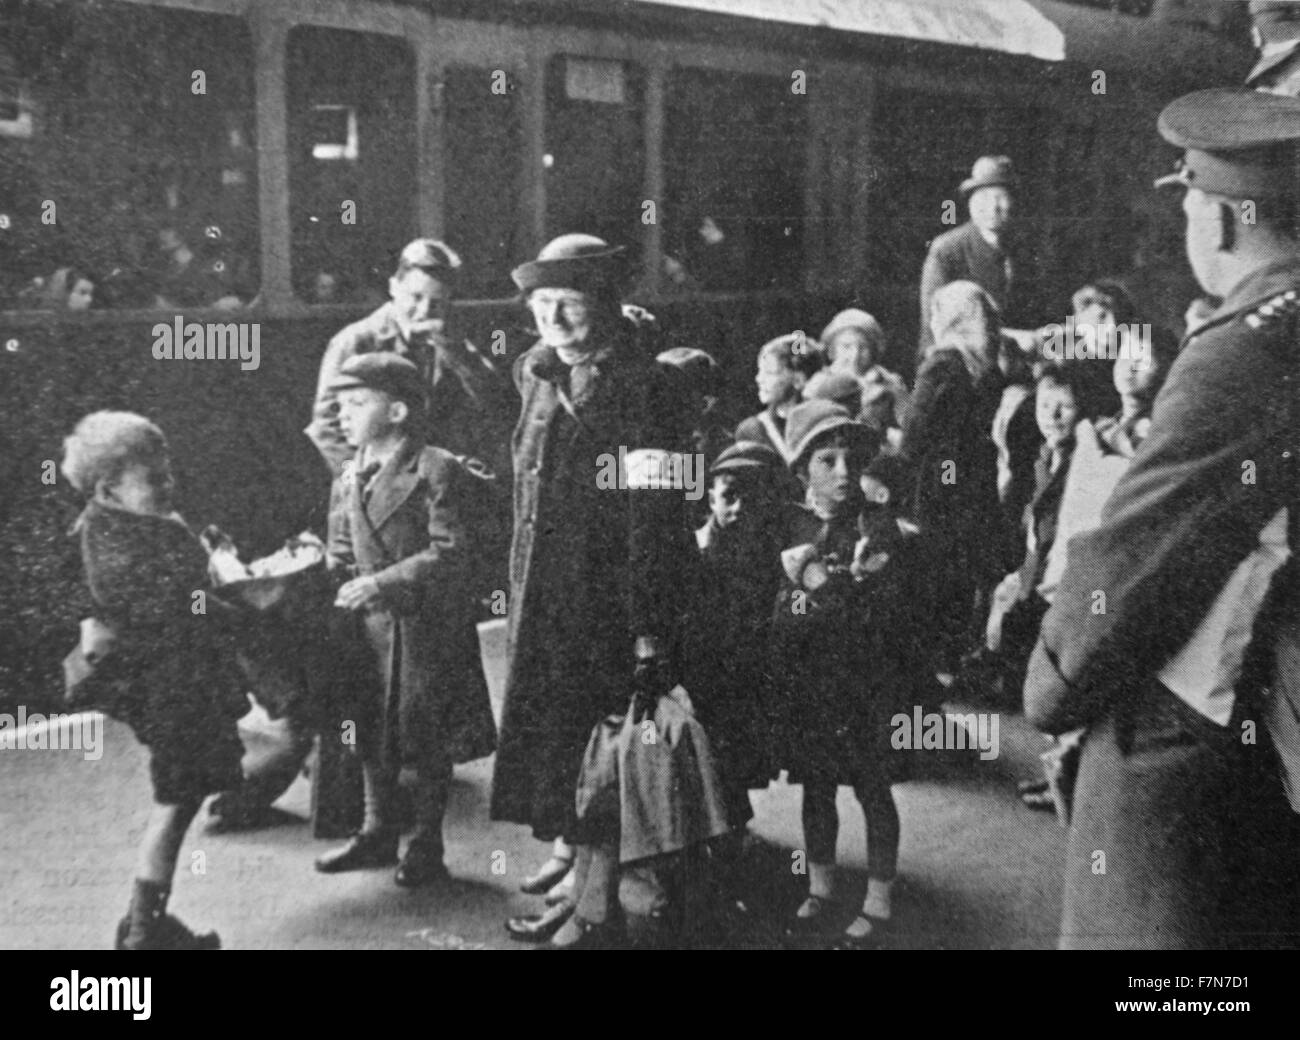 Poco dopo lo scoppio della Seconda guerra mondiale, i bambini sono stati evacuati dalla città il pensiero di essere soggetto all'attacco. Paddington è stato uno dei centri più affollati. Foto Stock